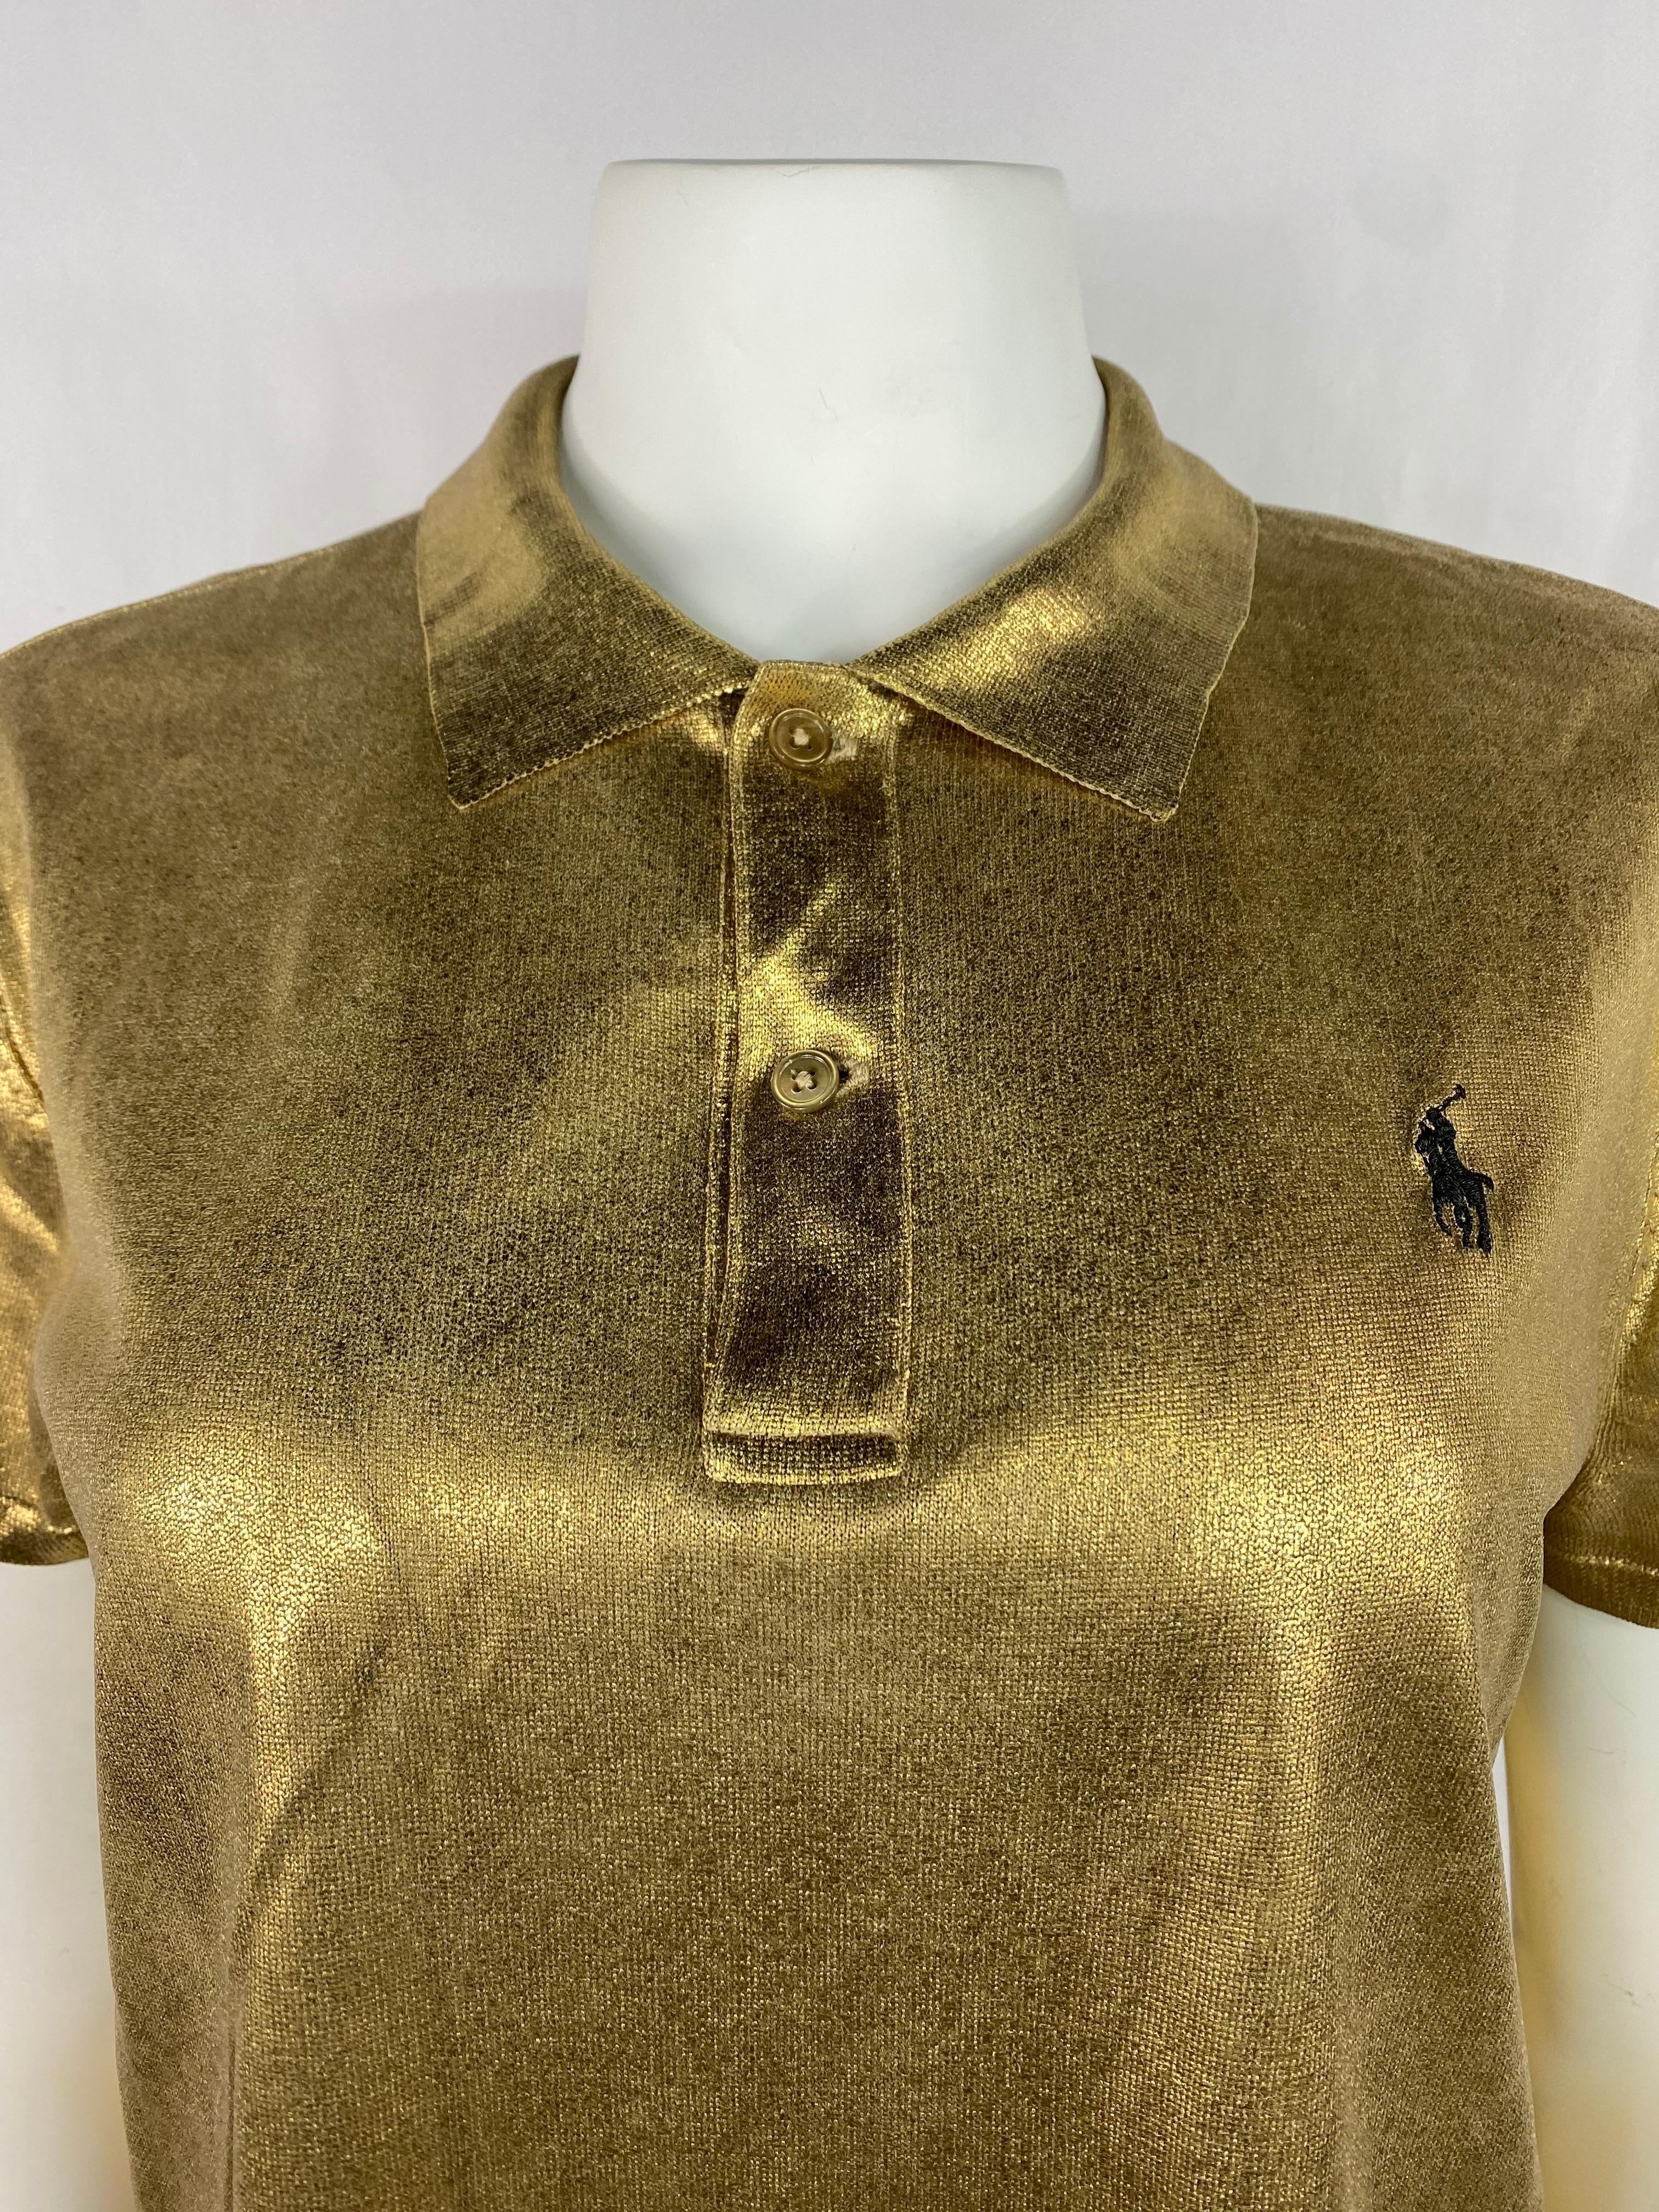 Einzelheiten zum Produkt:

Das Hemd hat eine goldene Metallic-Oberfläche, einen Kragen, zwei Knöpfe auf der Vorderseite und ein gesticktes schwarzes Polo-Logo.